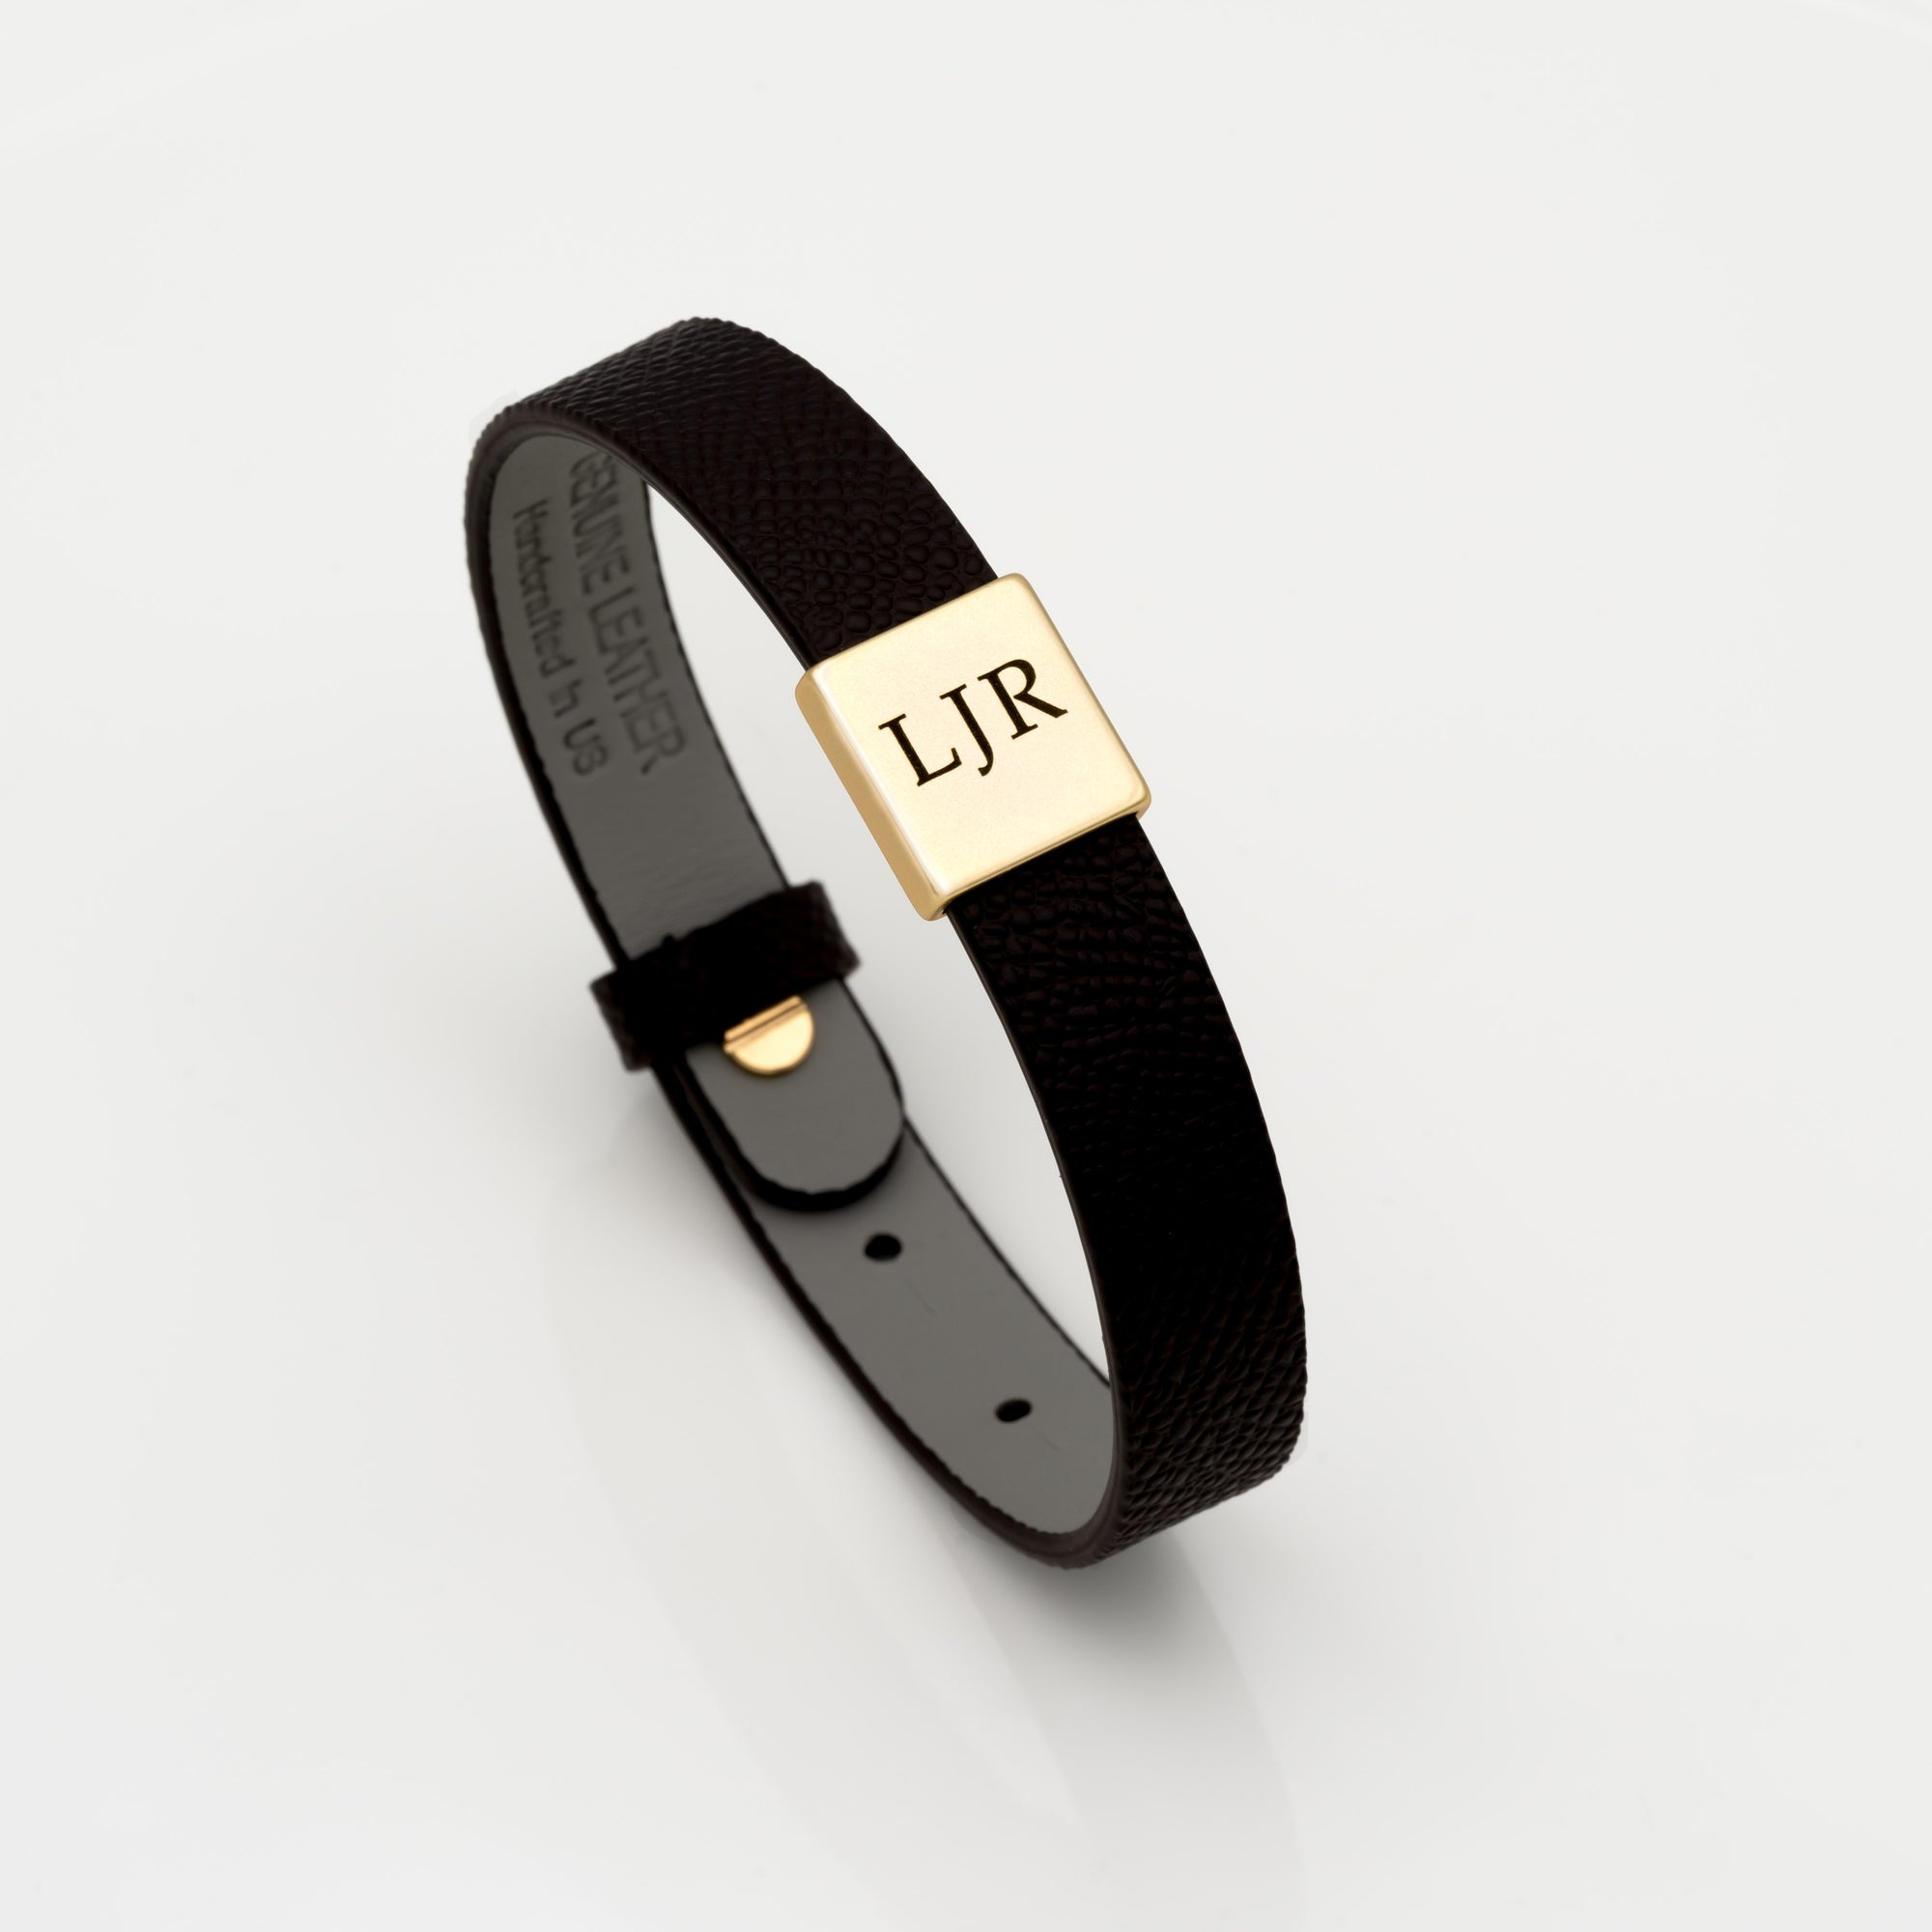 Louis Vuitton men's leather bracelet